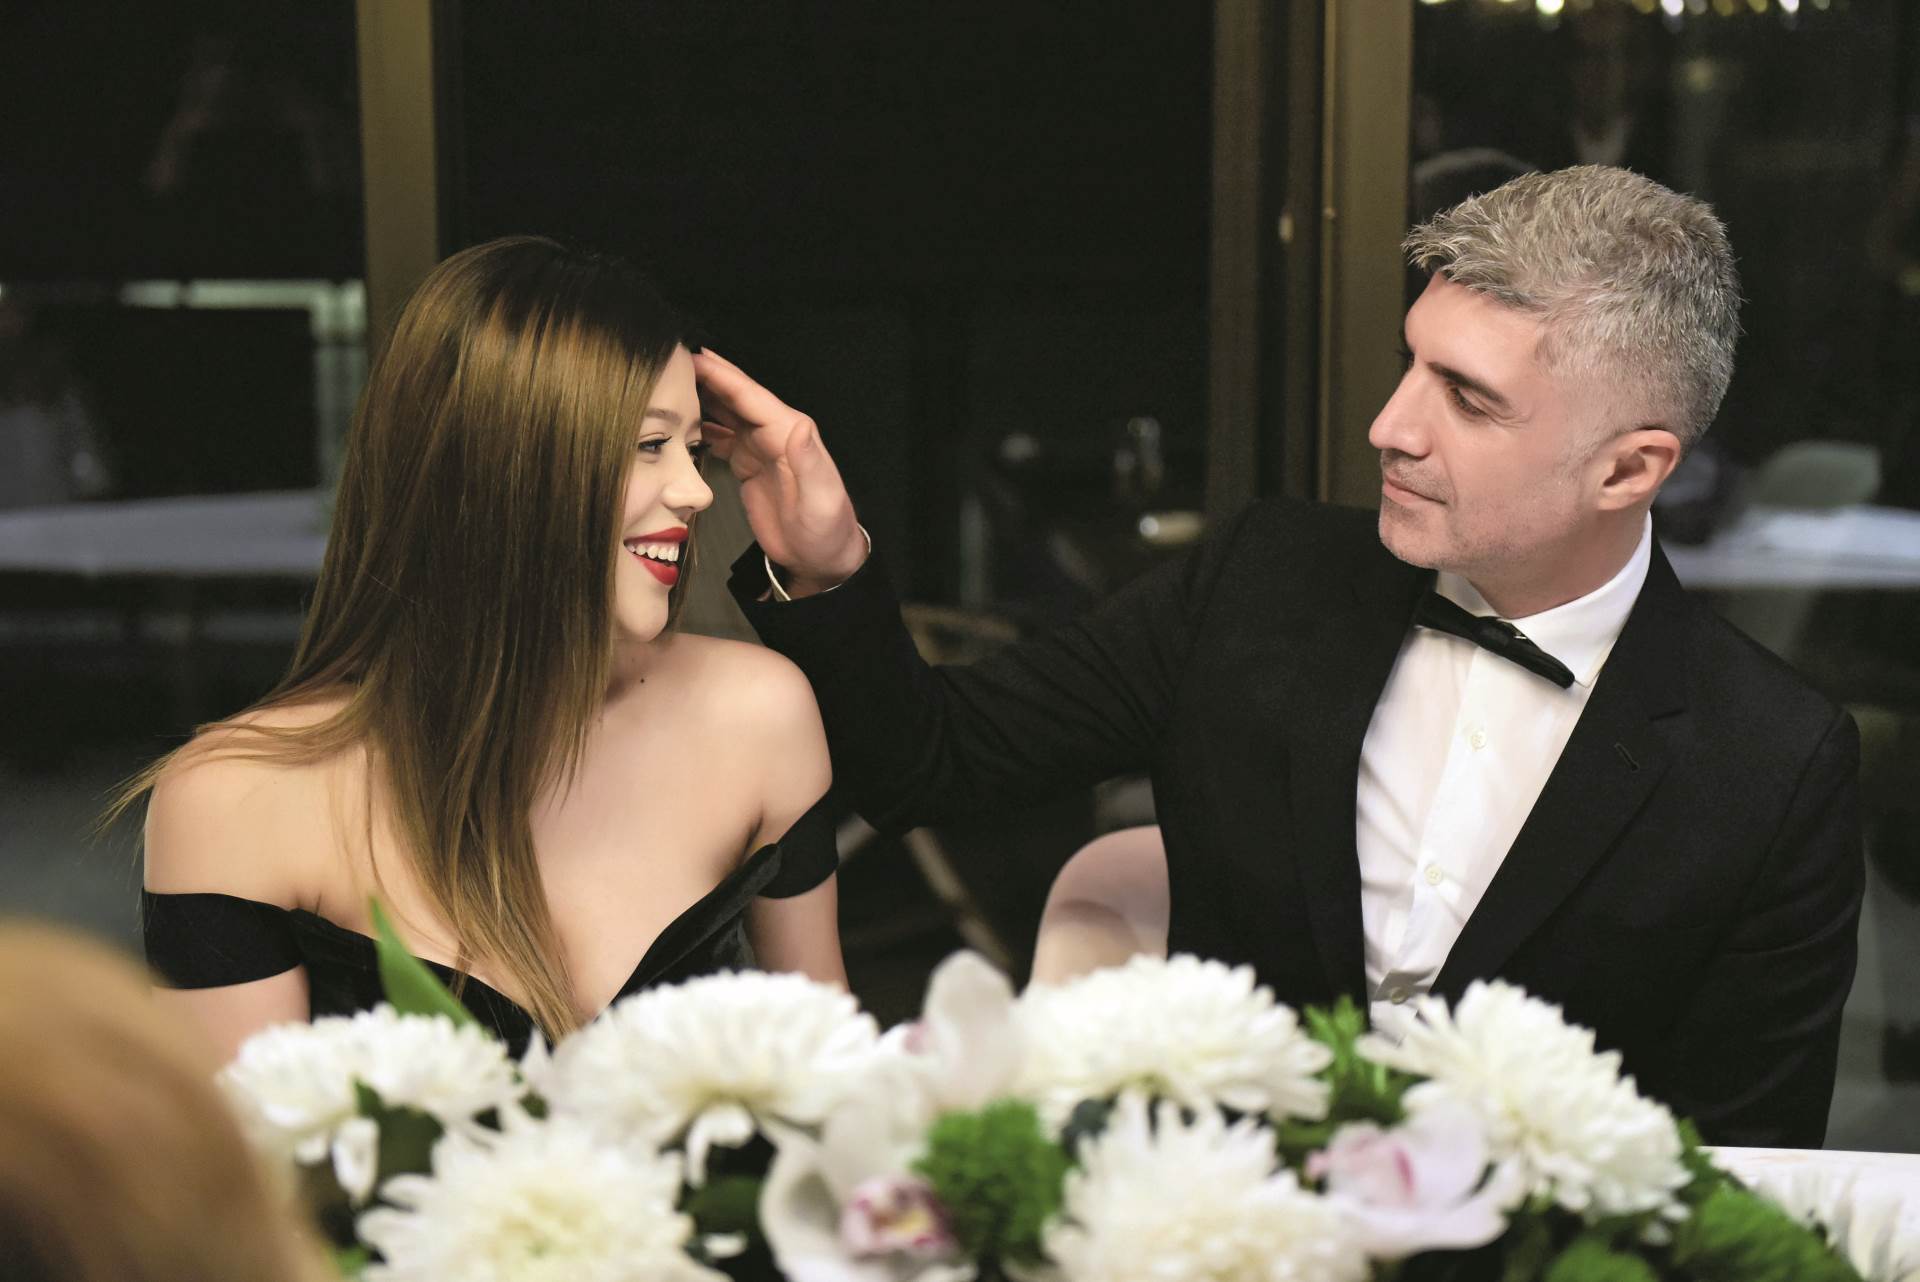 NAKON RAZVODA Bivša supruga turskog glumca traži 15 milijuna funti